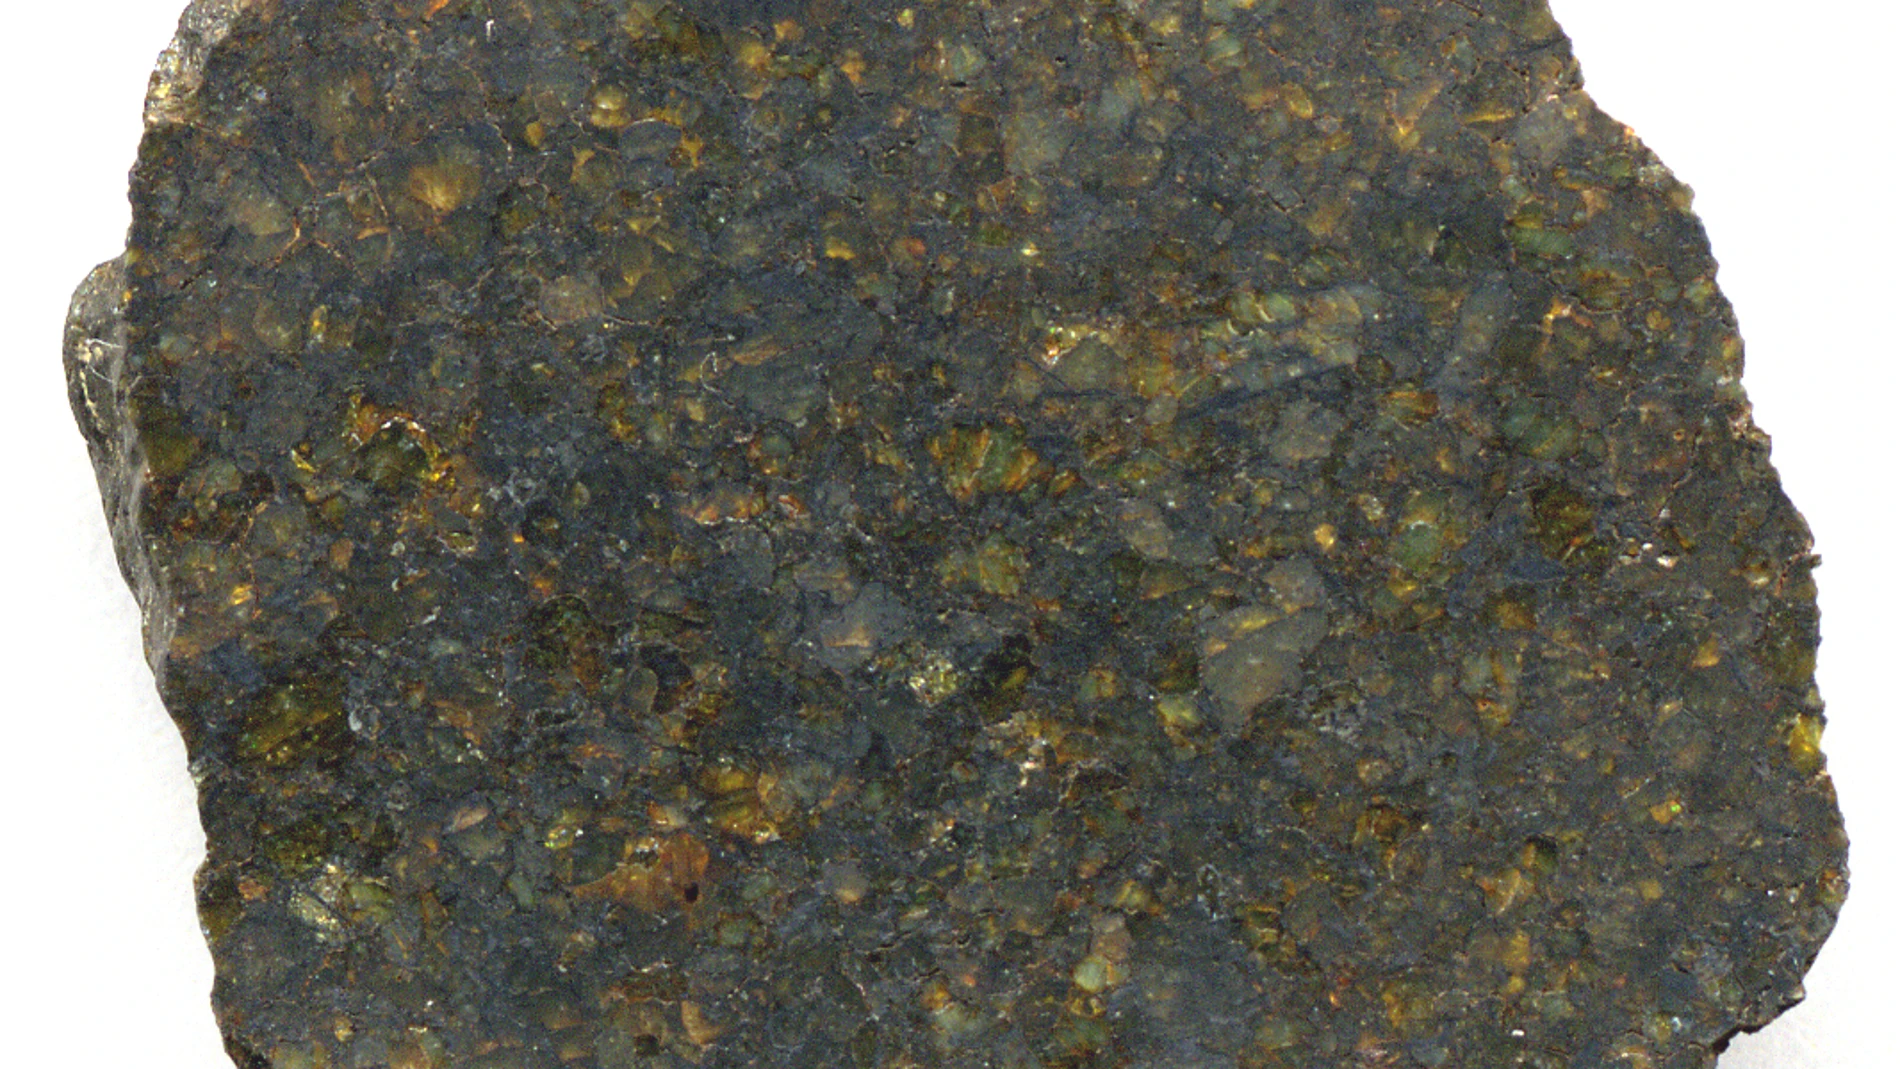 Un fragmento del meteorito NWA 4231, una ureilita encontrada en el noroeste de África.